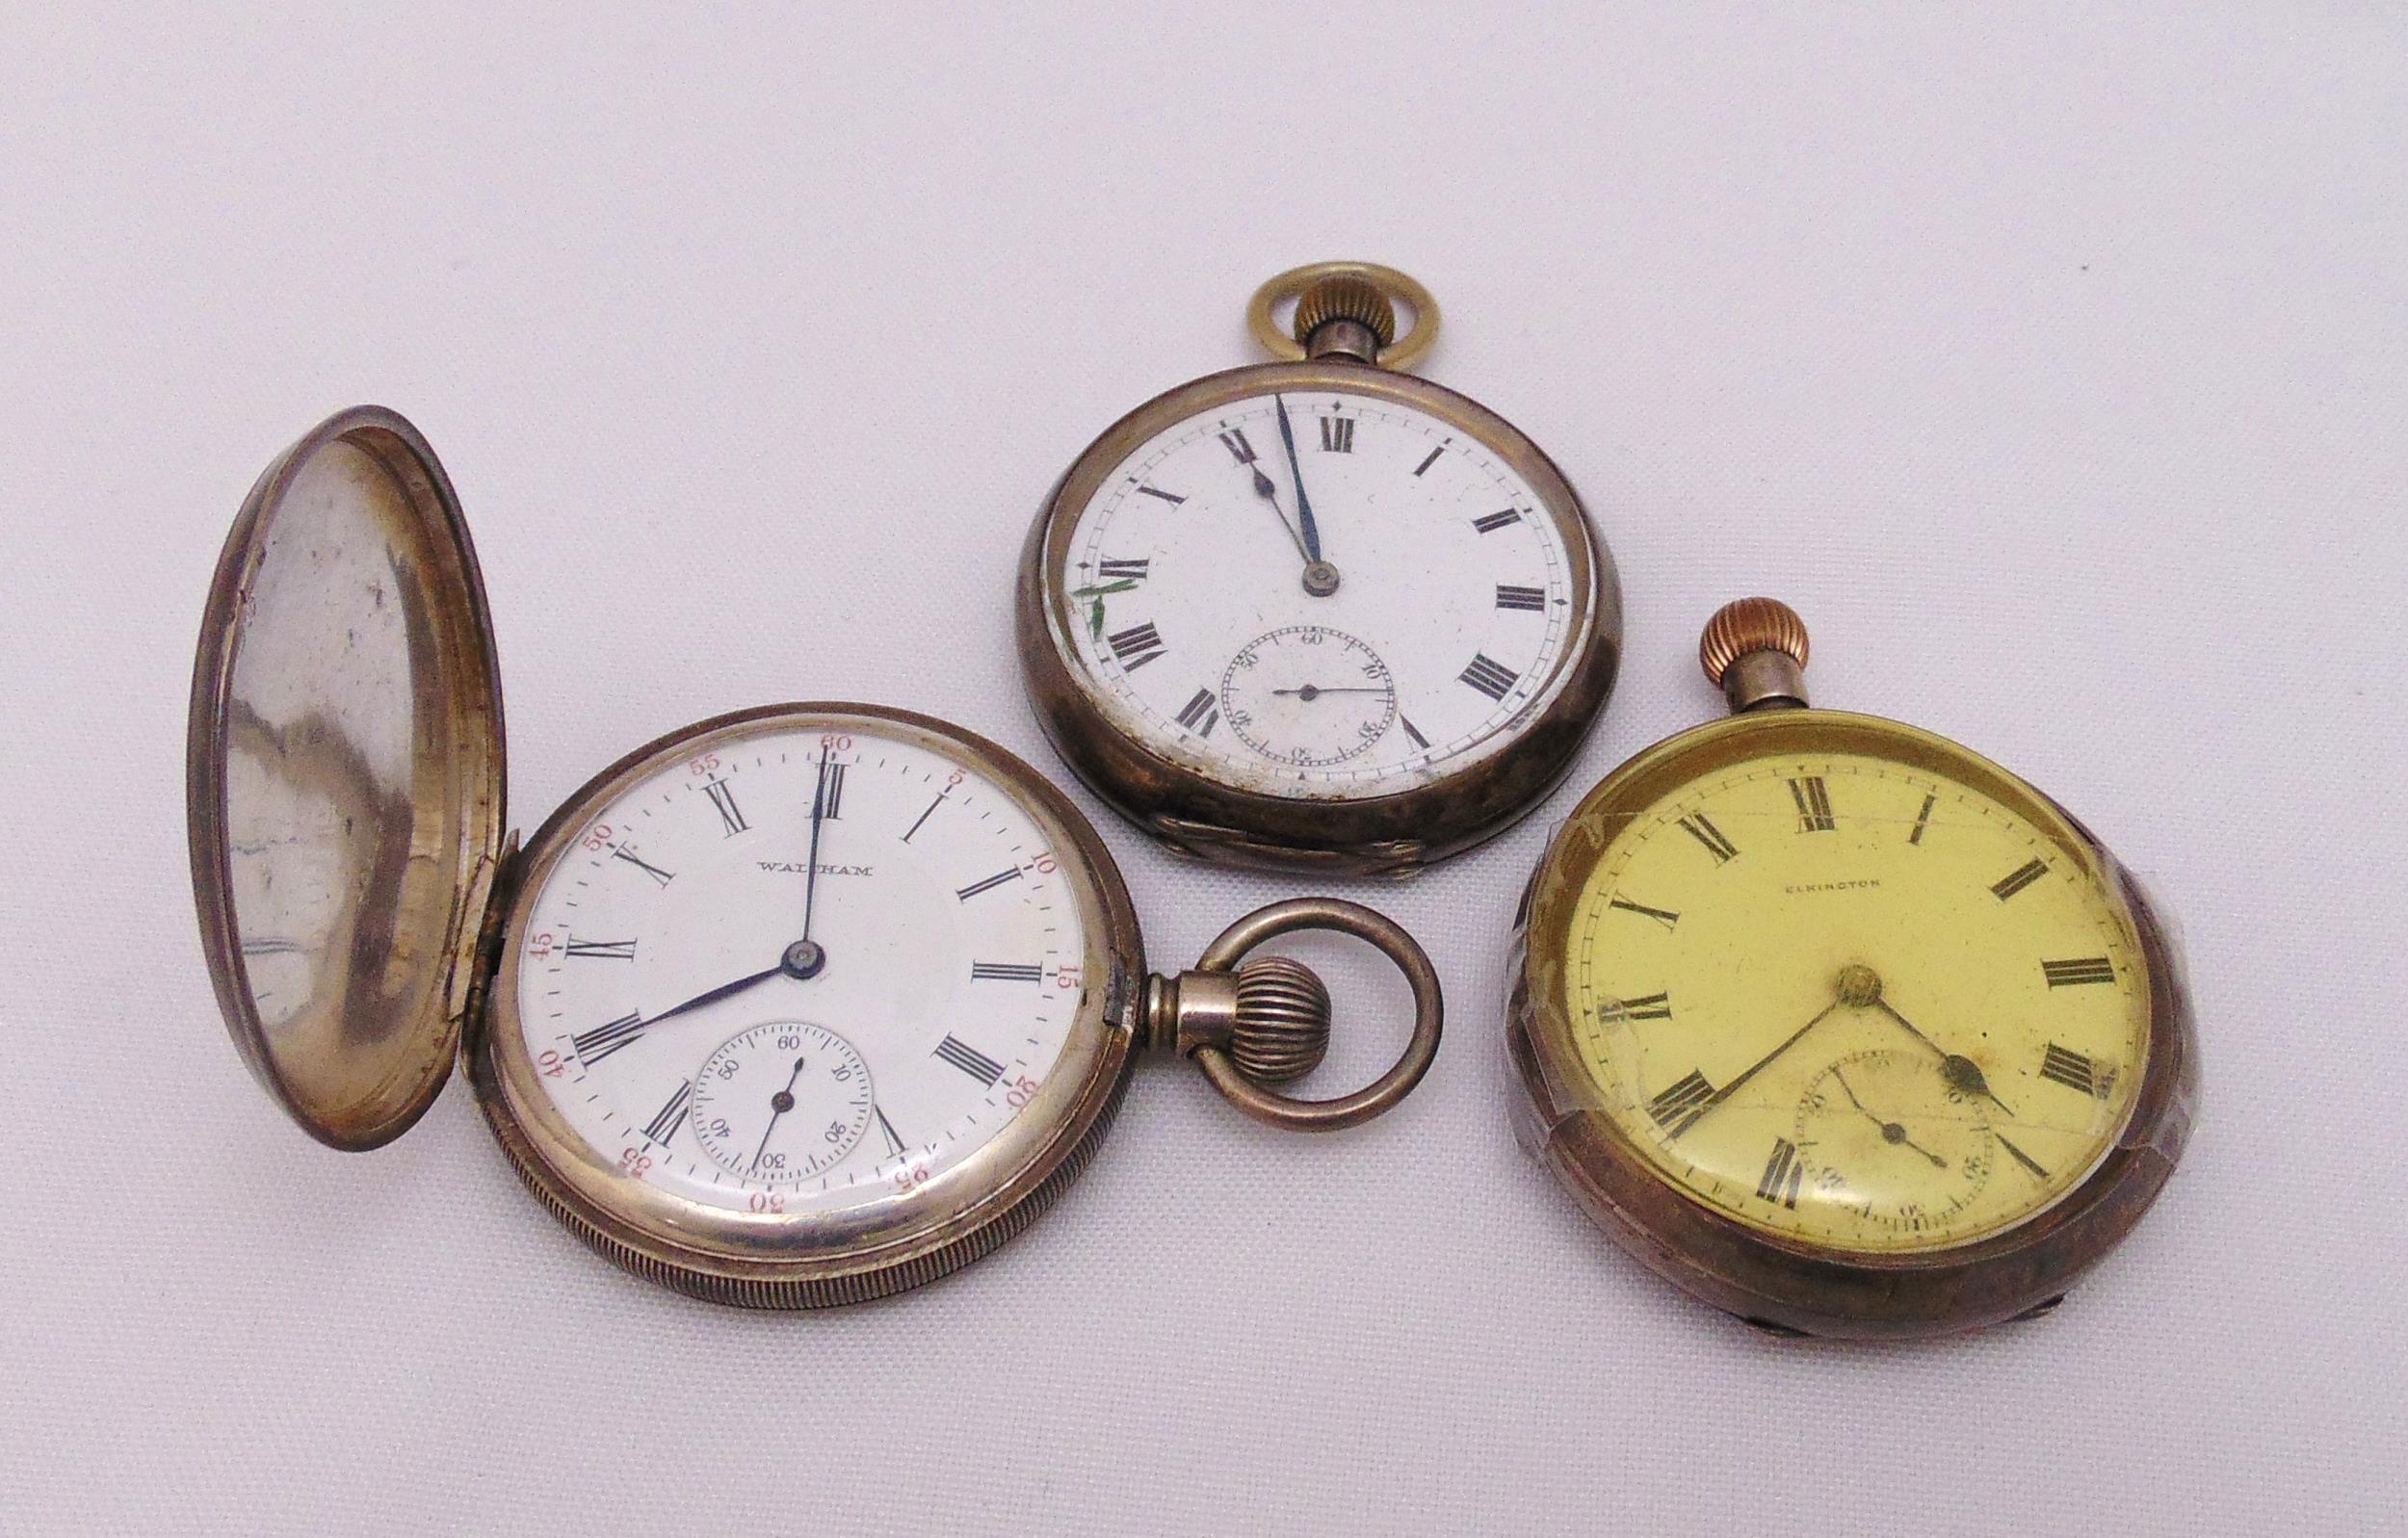 Three hallmarked silver pocket watches